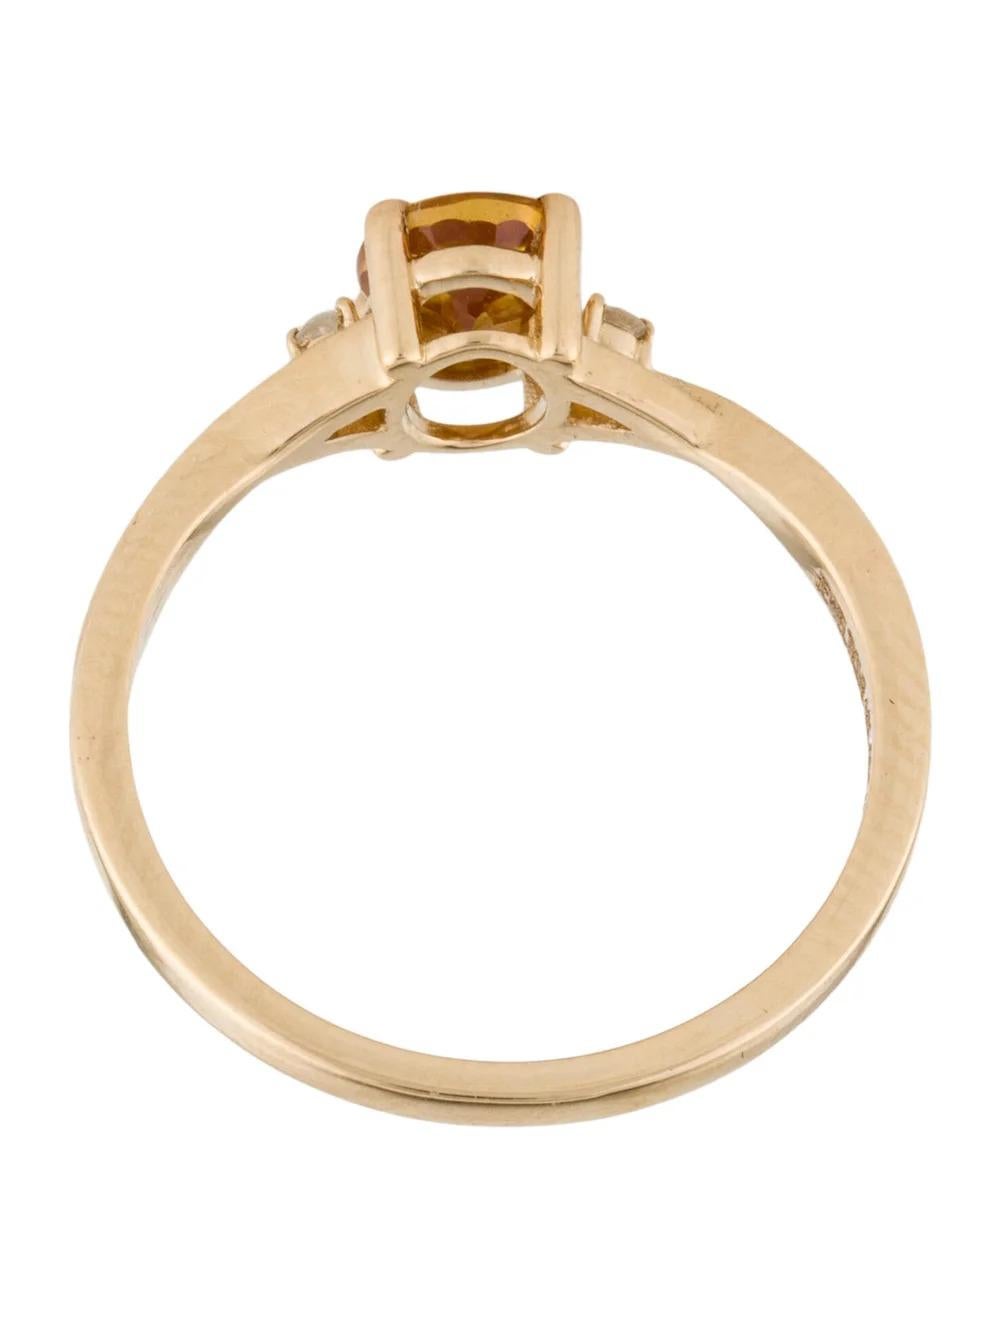 Women's 14K Sapphire & Diamond Cocktail Ring, Size 6.75 - Timeless & Elegant Design For Sale